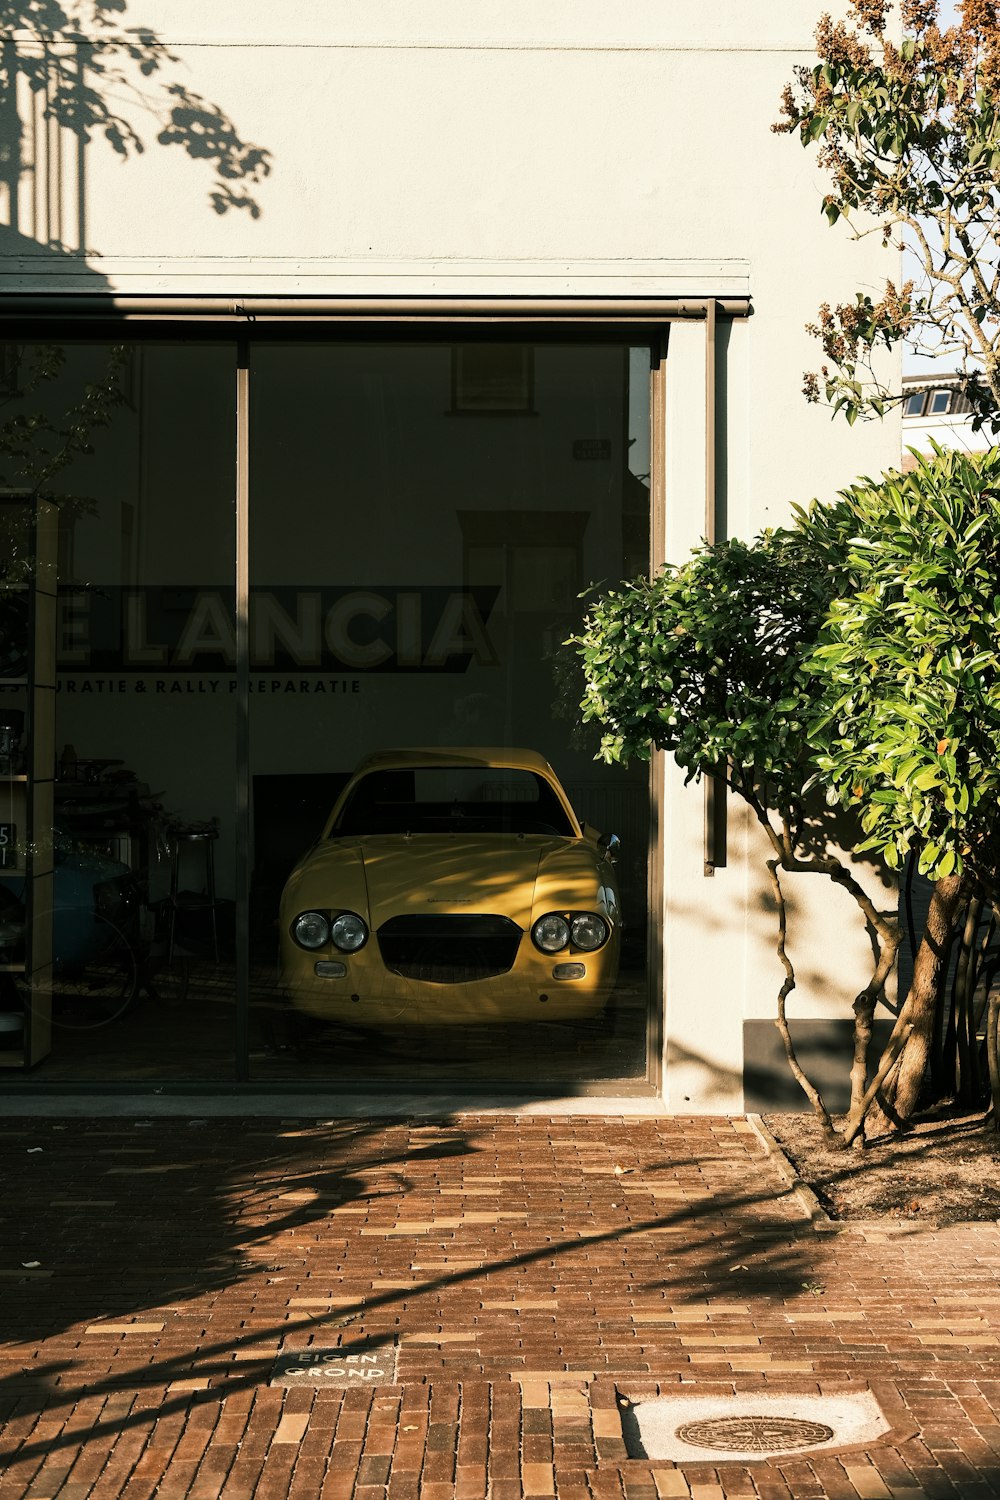 Scarabeo giallo Volkswagen parcheggiato accanto all'albero verde durante il giorno